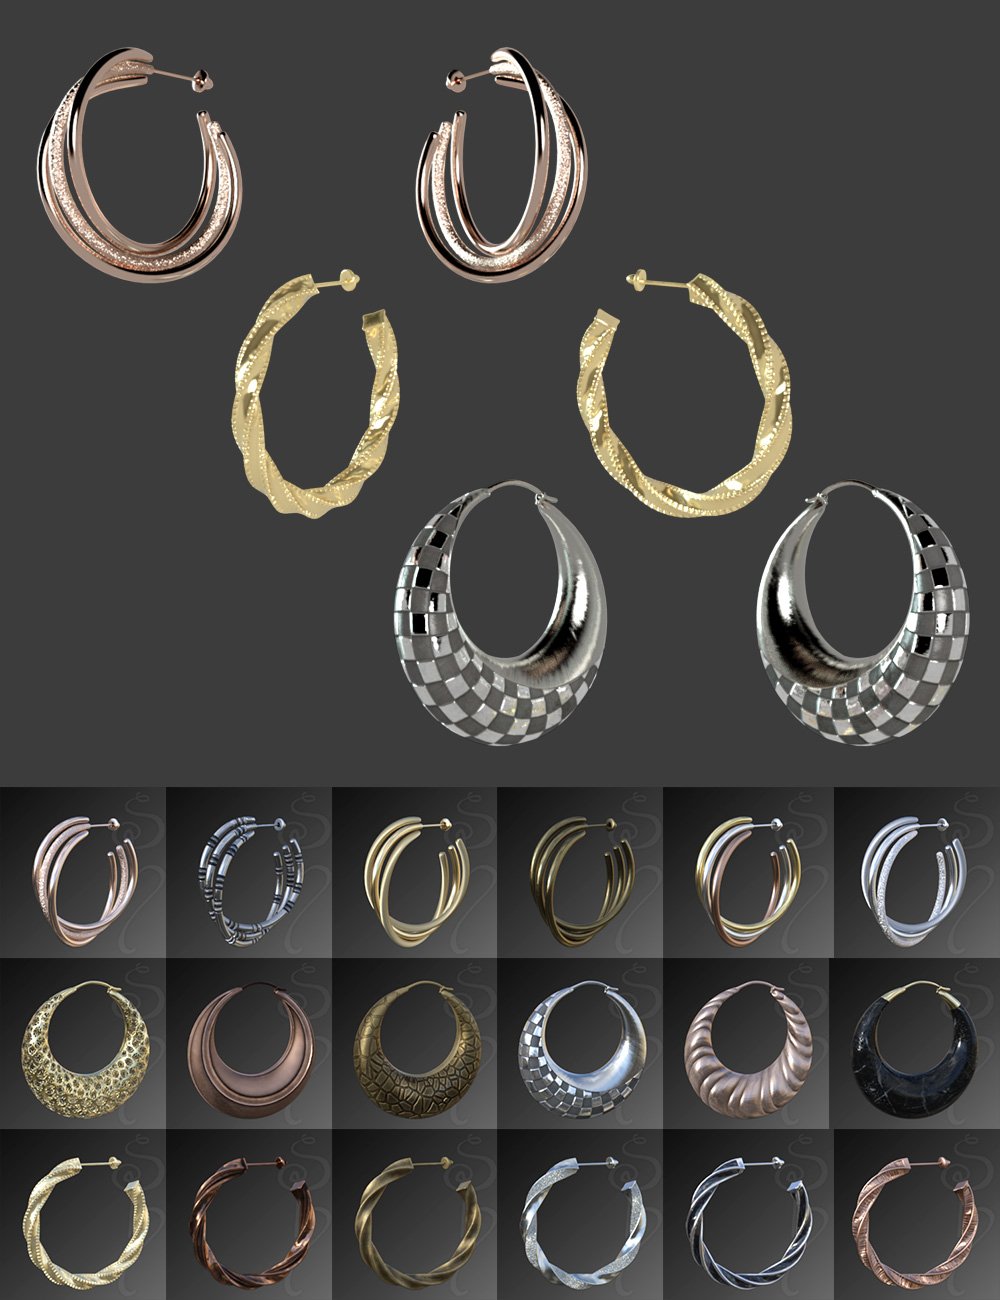 Hoop Earrings Classic Style for Genesis 8 and 8.1 Females